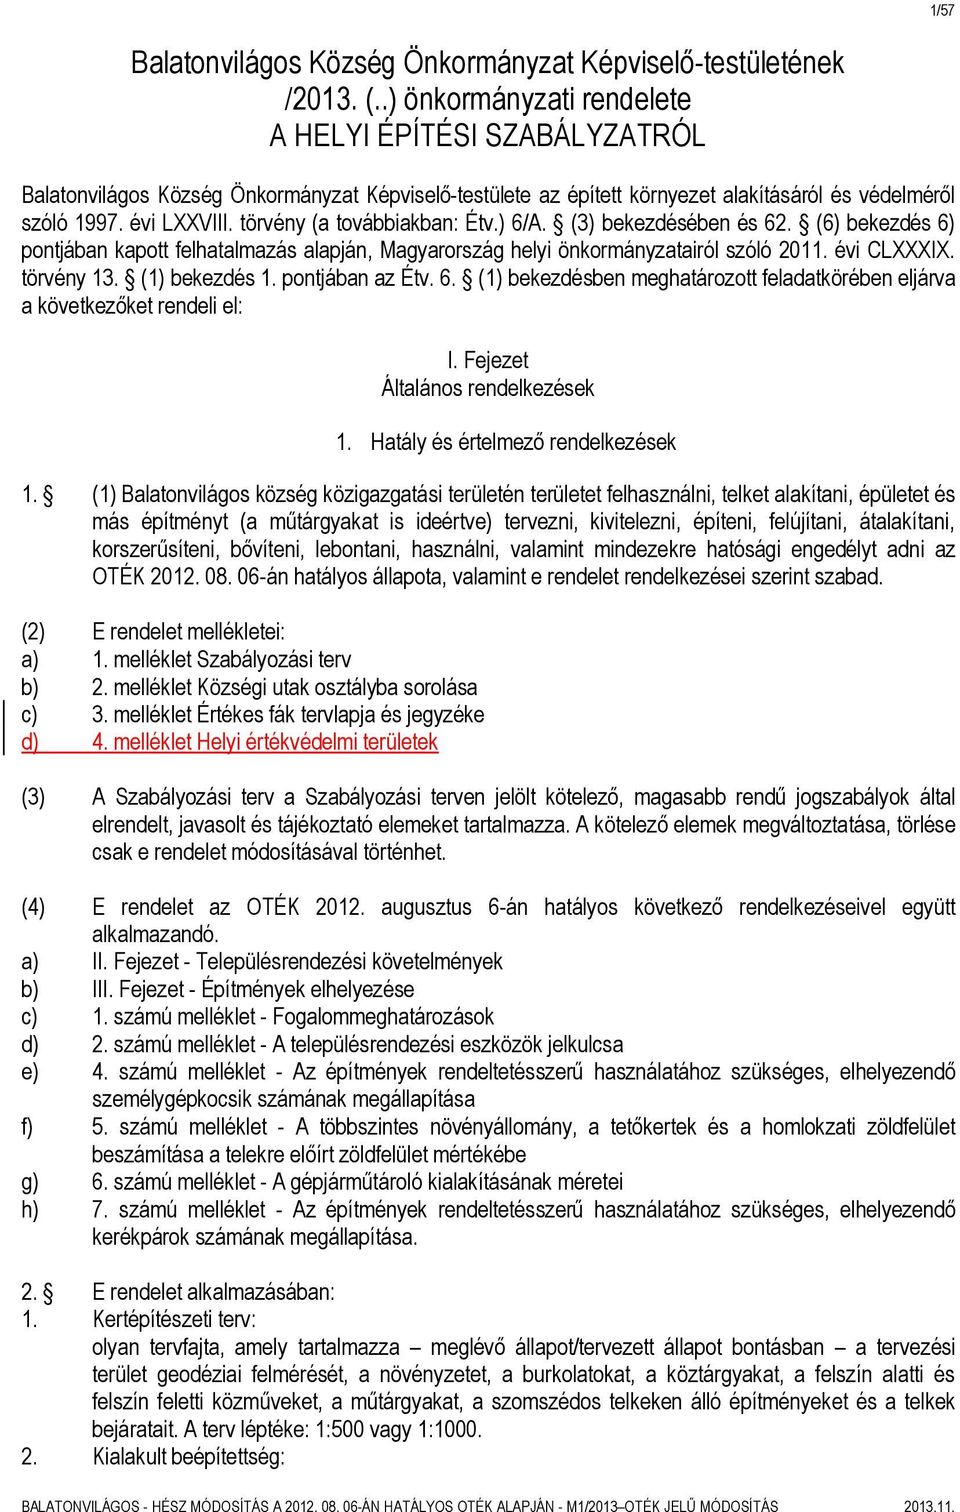 törvény (a továbbiakban: Étv.) 6/A. (3) bekezdésében és 62. (6) bekezdés 6) pontjában kapott felhatalmazás alapján, Magyarország helyi önkormányzatairól szóló 2011. évi CLXXXIX. törvény 13.